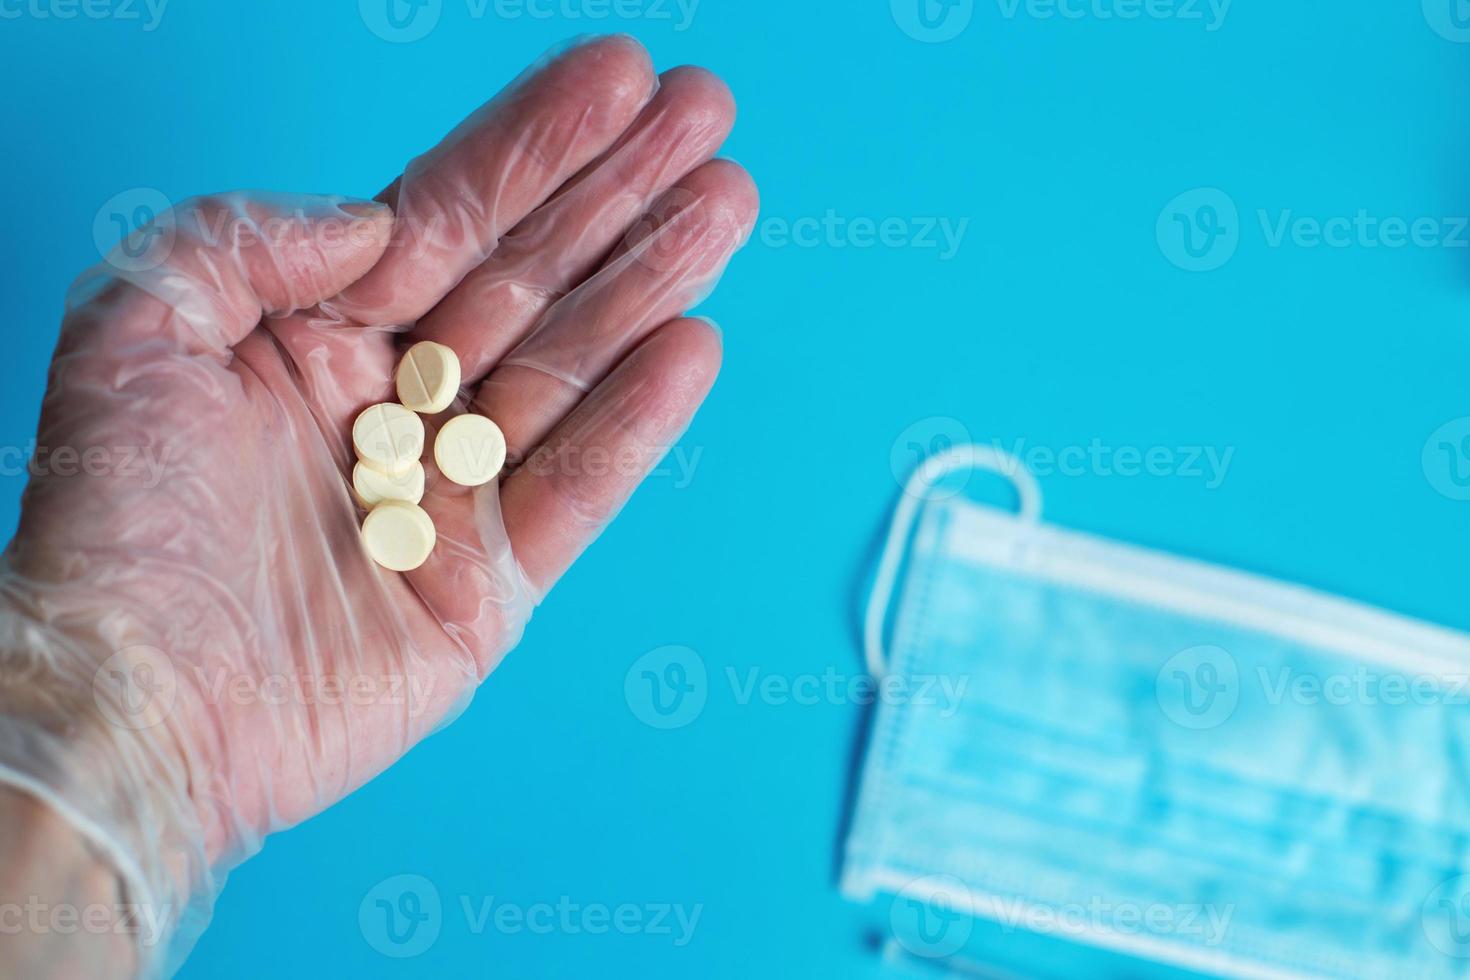 medizinische maske und tabletten schließen auf blauem hintergrund. Hand hält Pille. coronavirus, grippe-atemwegserkrankungen-konzept foto